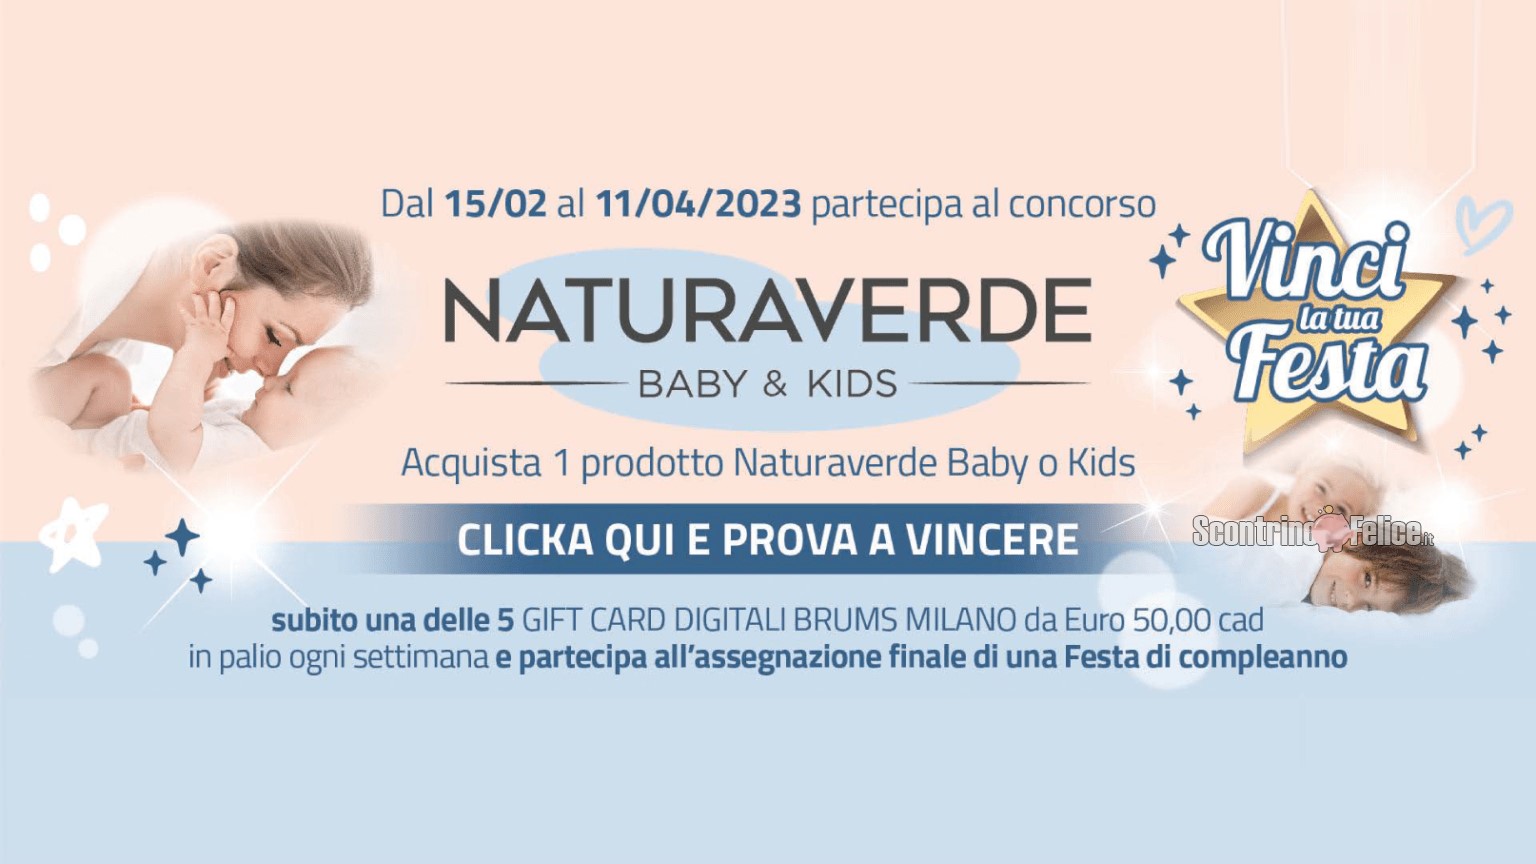 Concorso Naturaverde "Vinci la tua festa": vinci gift card Brums e una festa di compleanno!